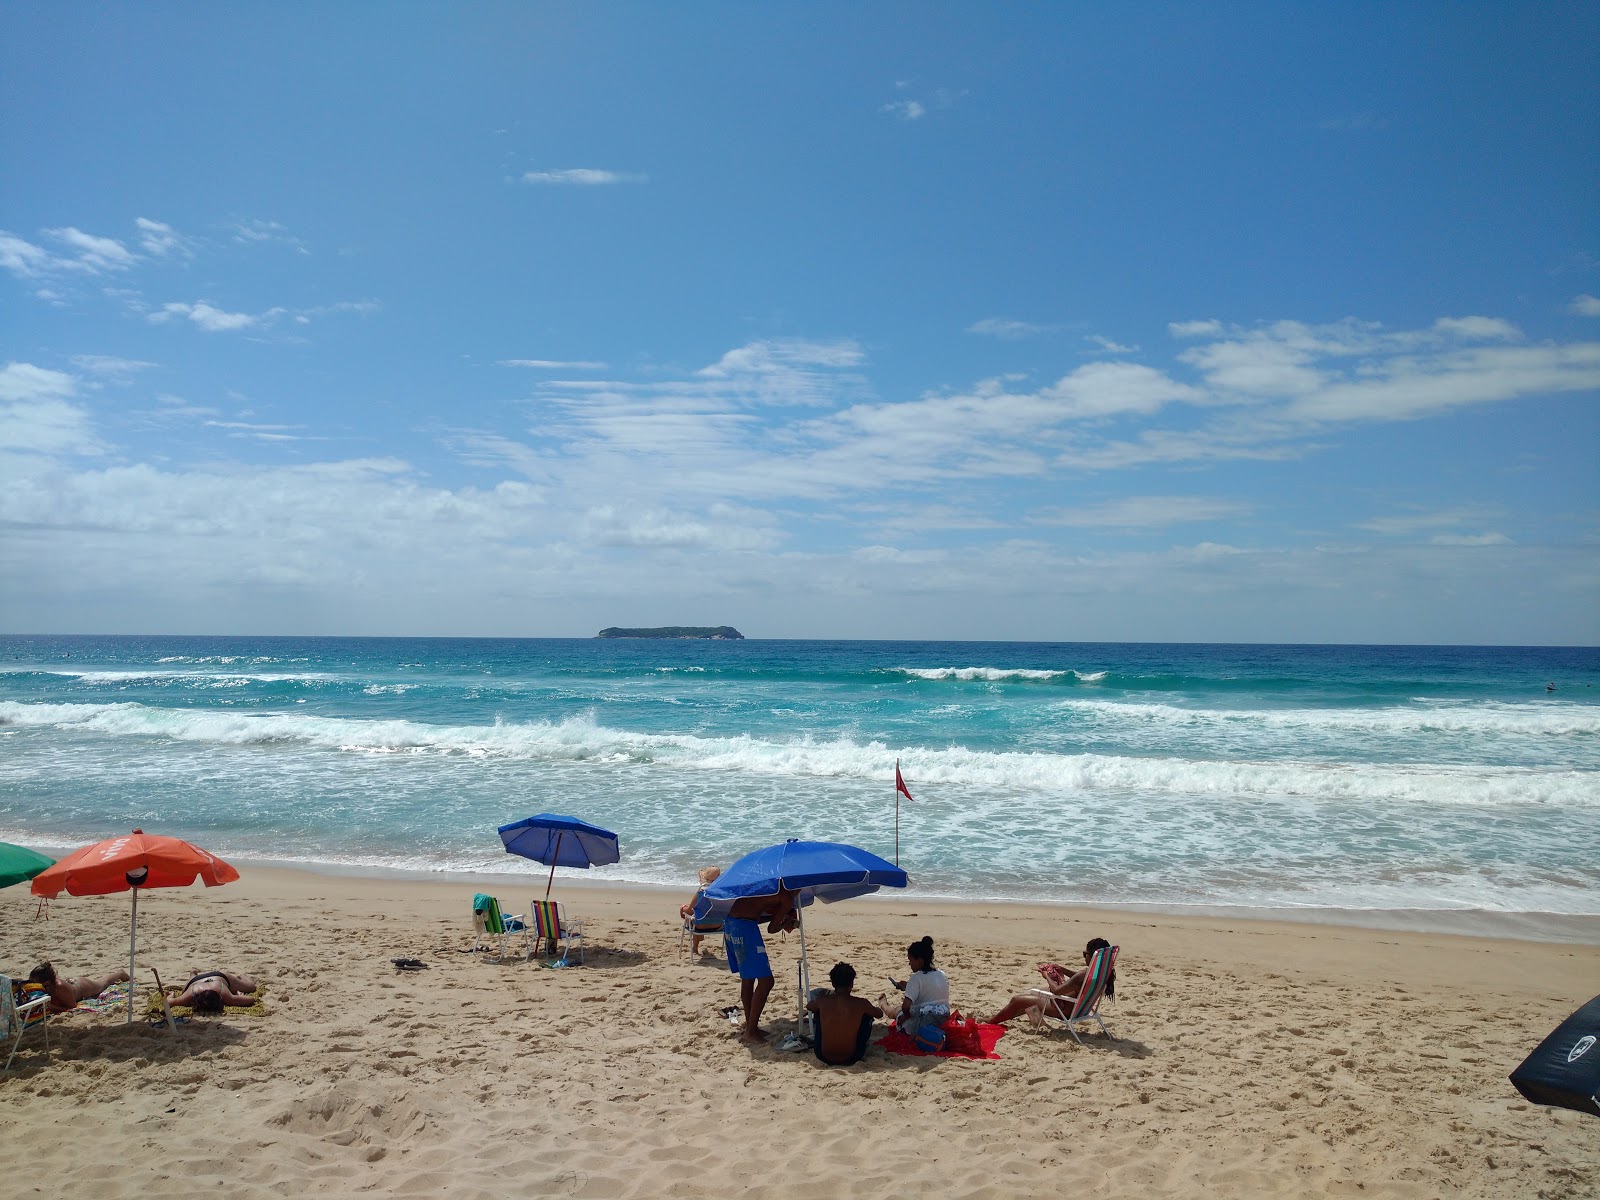 Praia Mole'in fotoğrafı - rahatlamayı sevenler arasında popüler bir yer